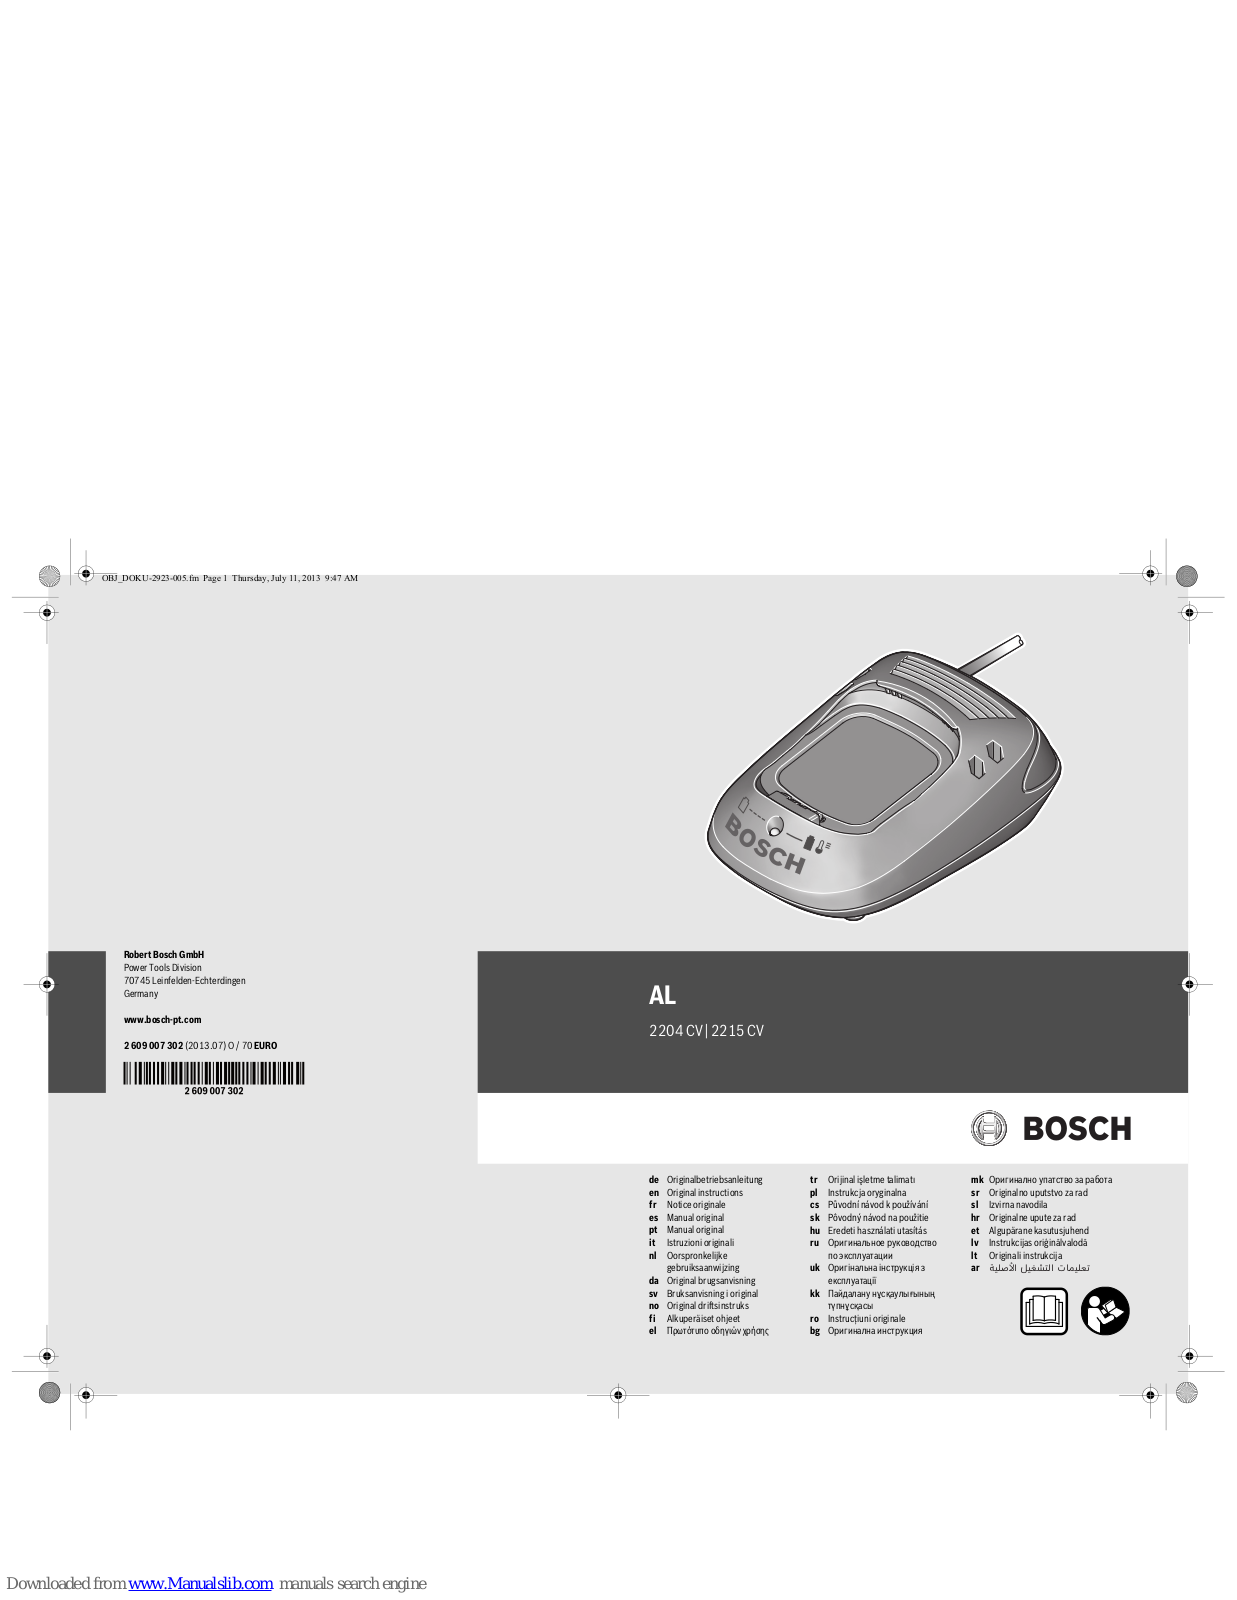 Bosch AL 2204 CV, AL 2215 CV Original Instructions Manual